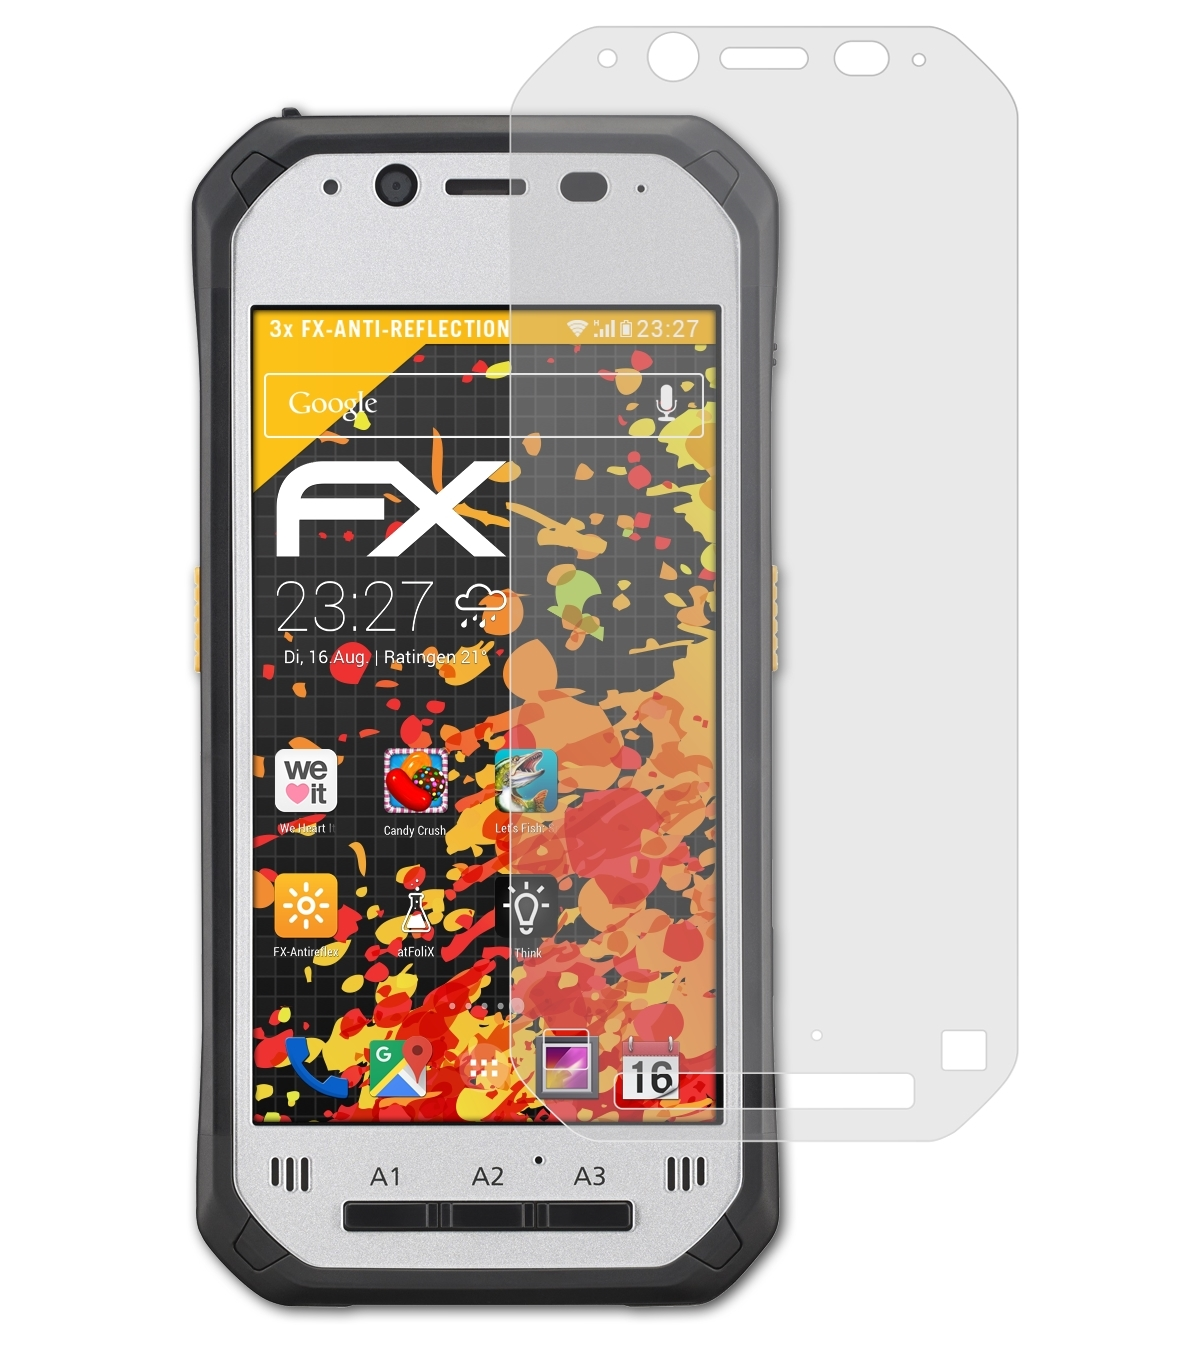 ATFOLIX Toughbook Panasonic Displayschutz(für FZ-N1) FX-Antireflex 3x